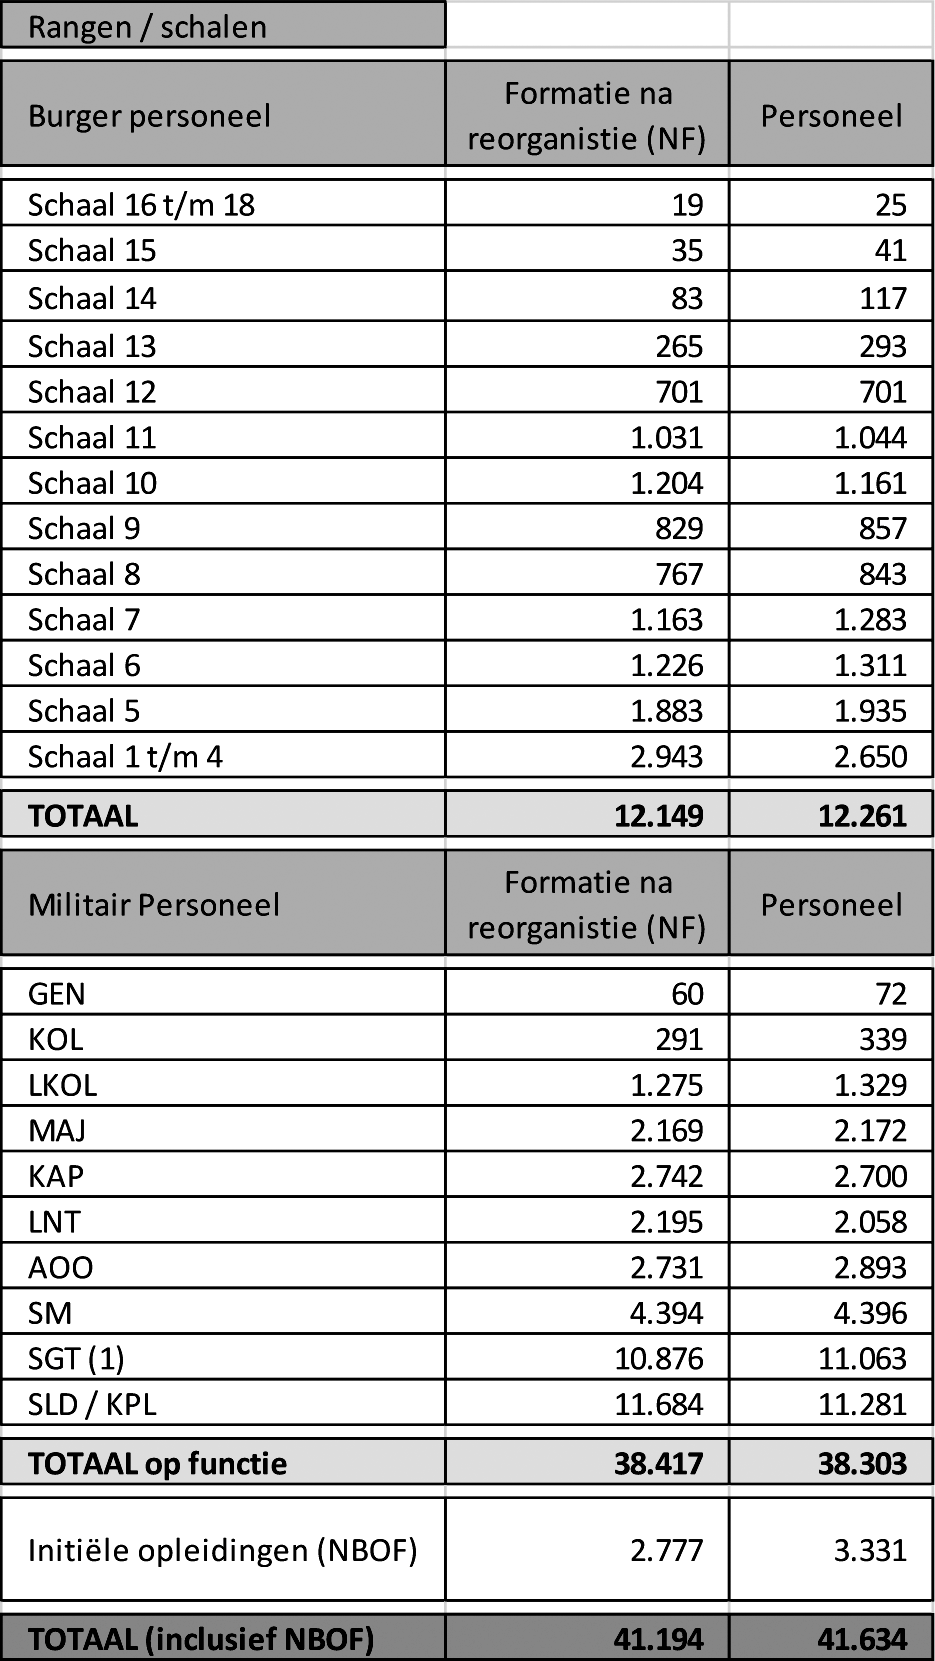 Tabel 9: Numerus Fixus (NF) 2016 per rang /schaal versus personeel vallend onder NF per 1 juli 2013.